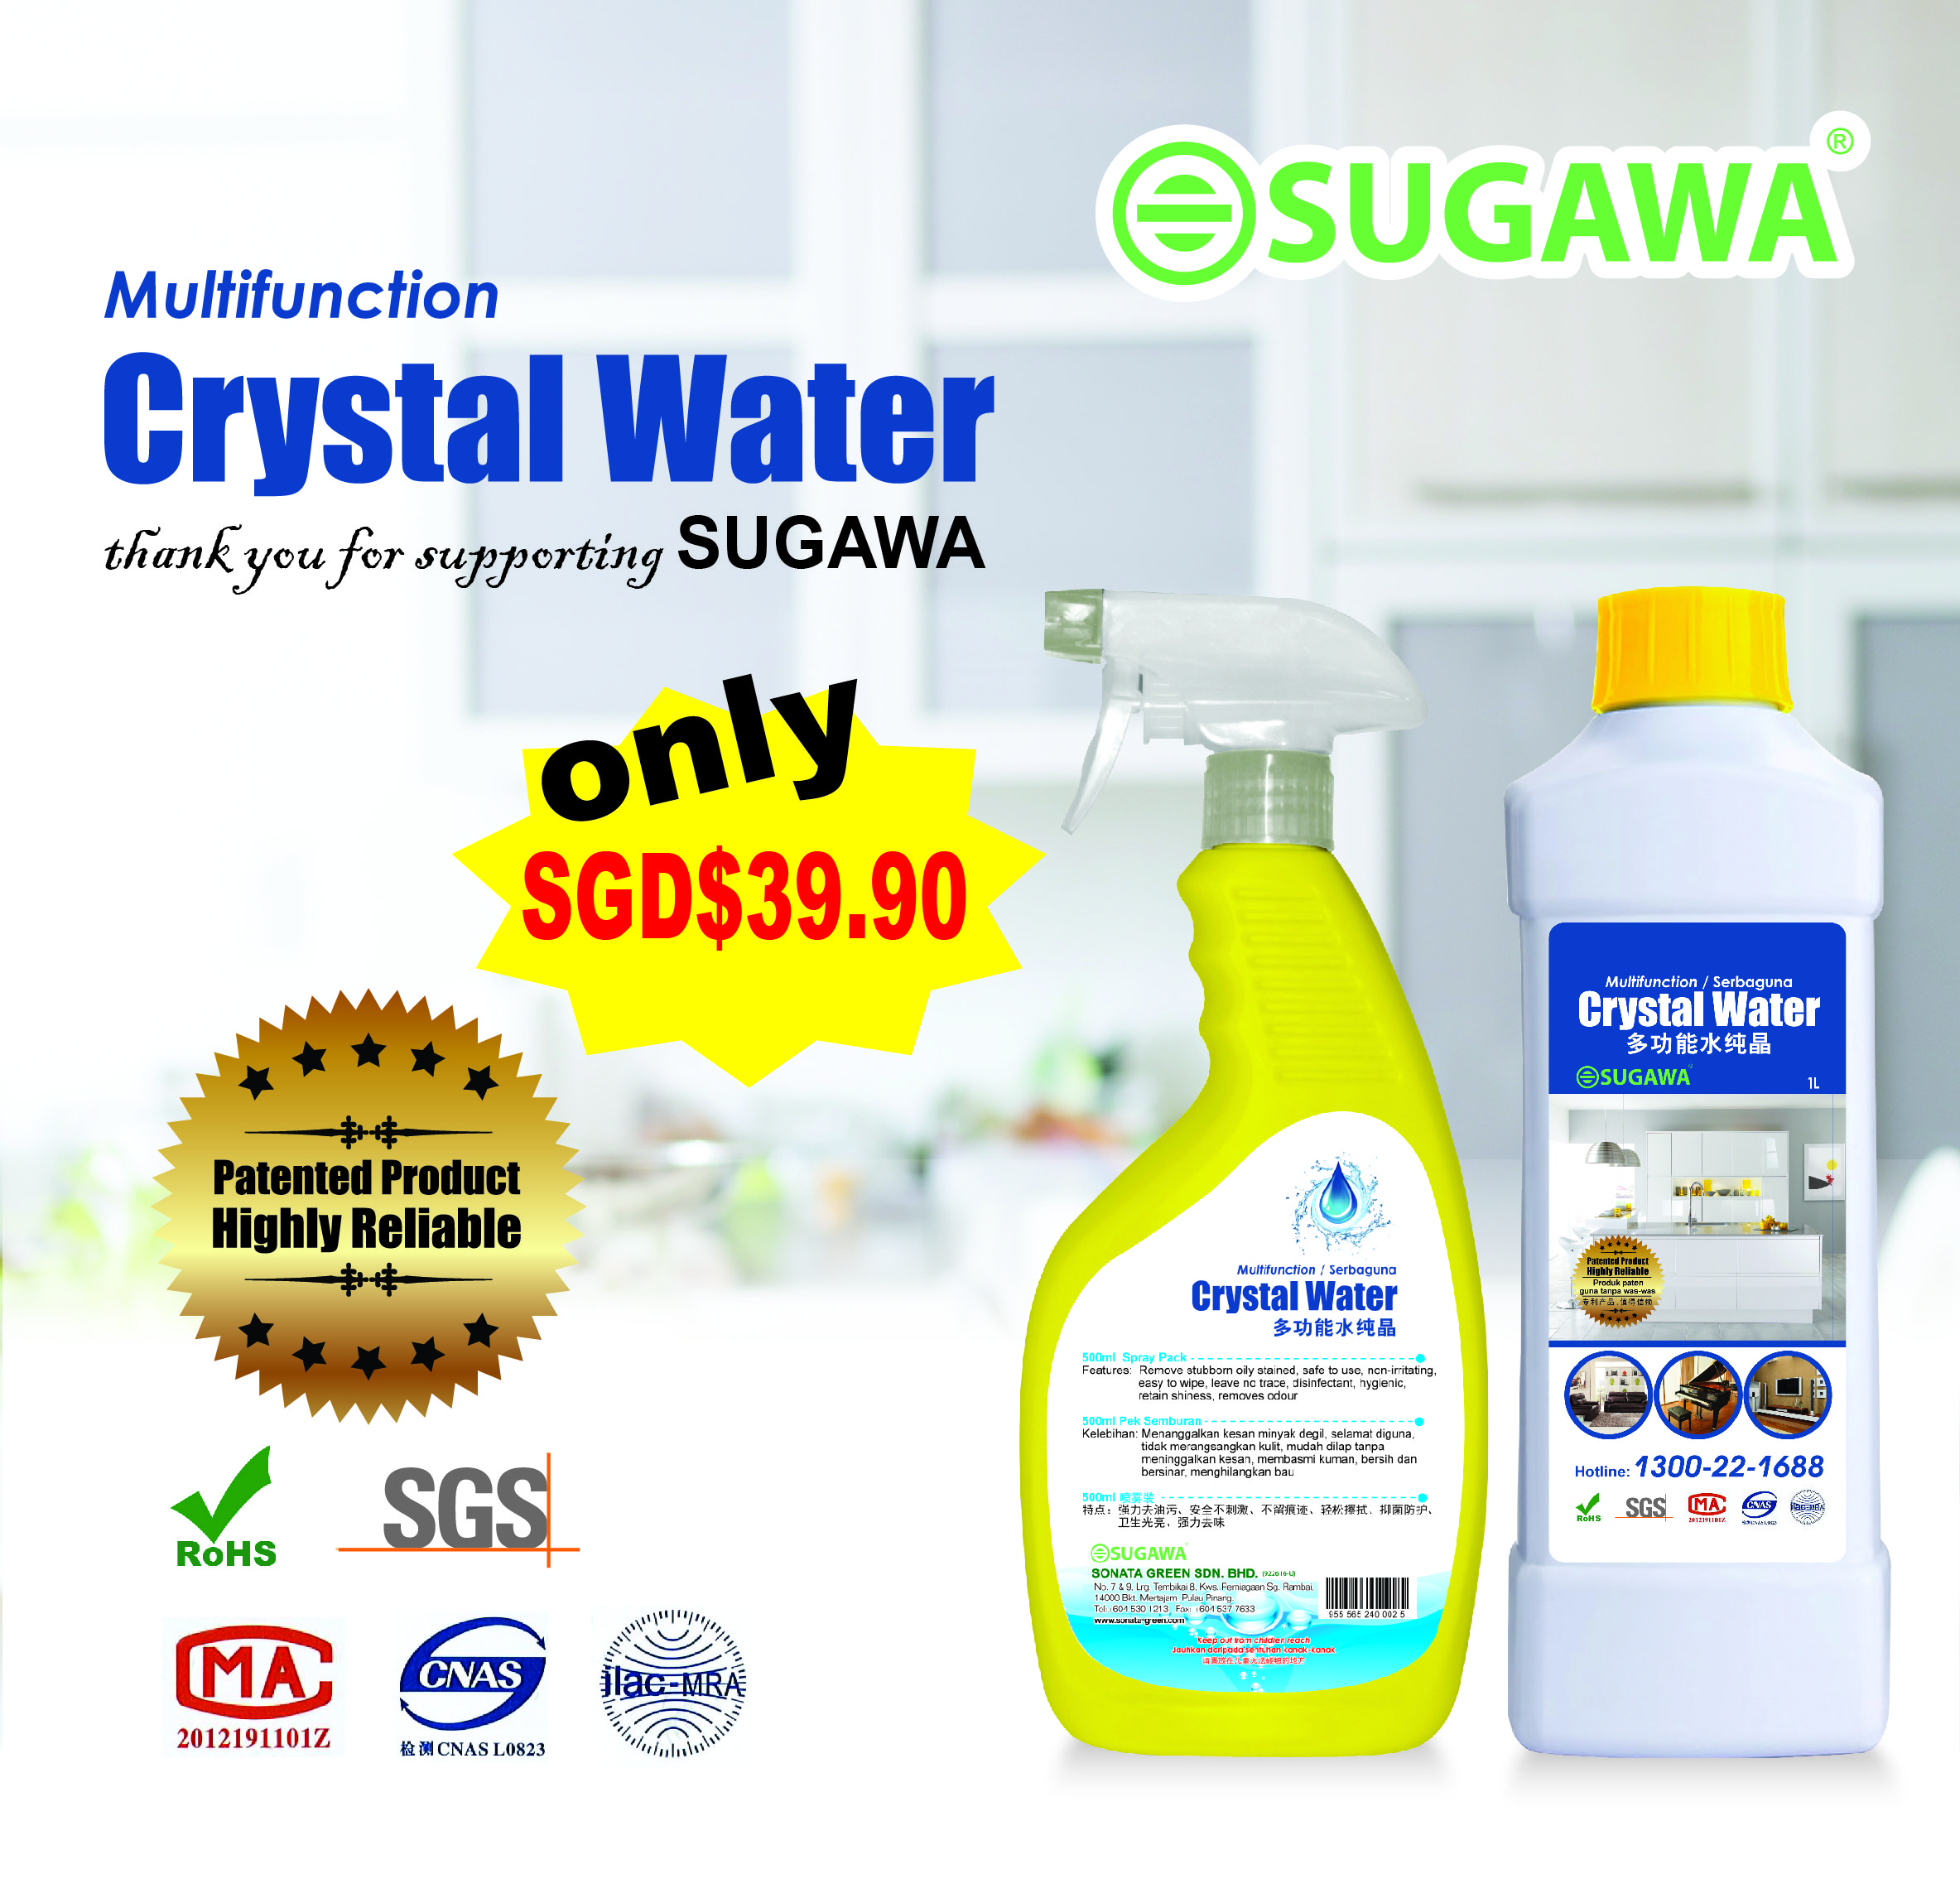 Sugawa Smart Cooker Price : Sugawa Smart Cooker Sms3800 - I bought a